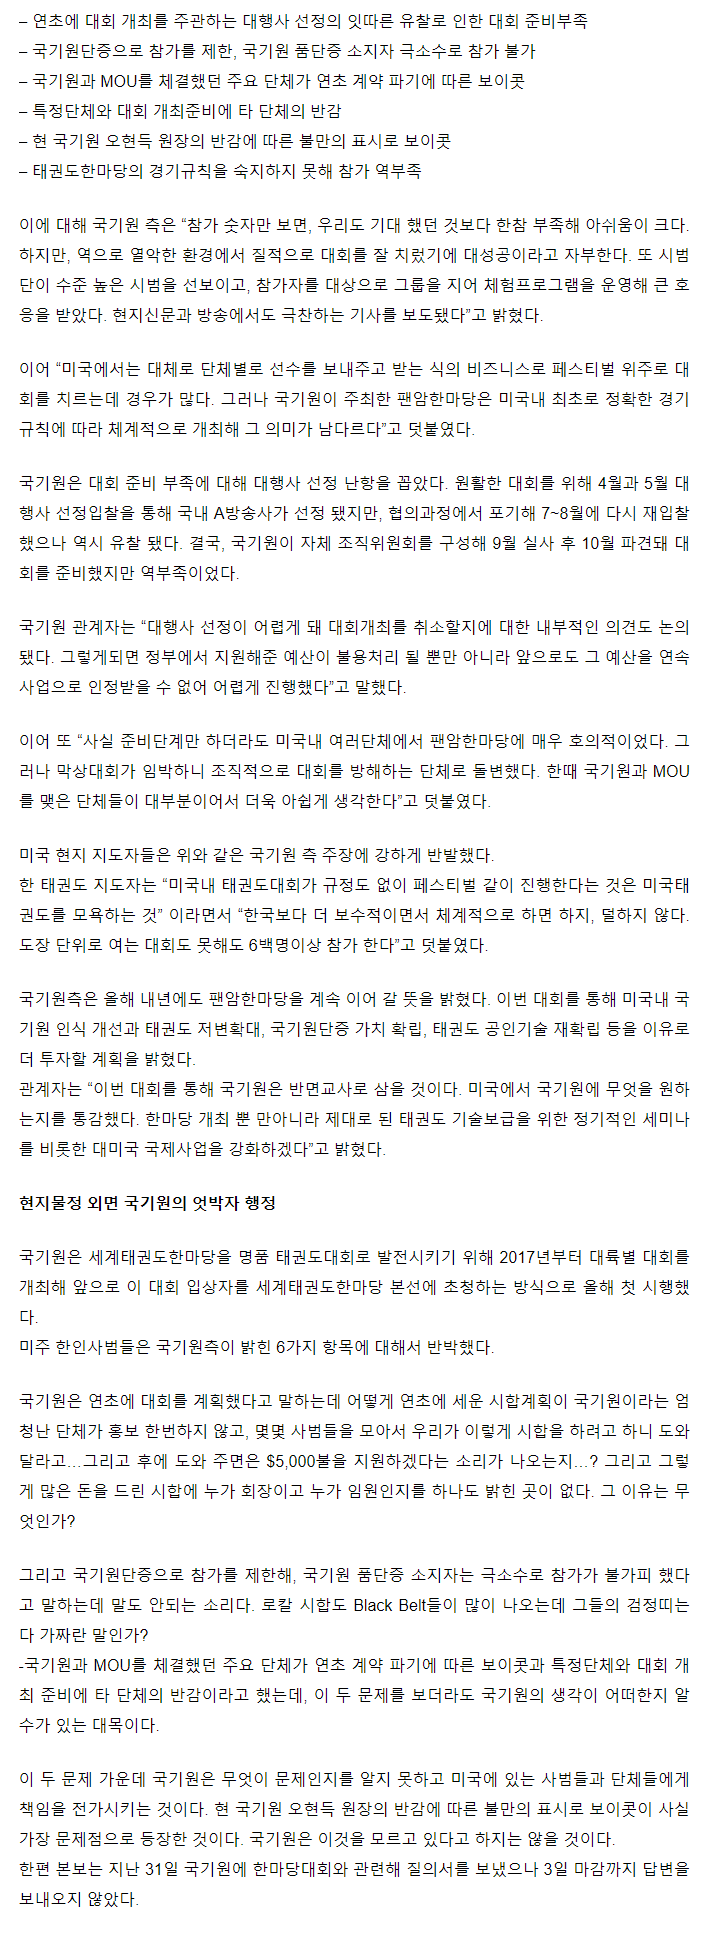 20180104_굴욕국기원주최la팬암한마당대회참패이유_sunday_03.gif